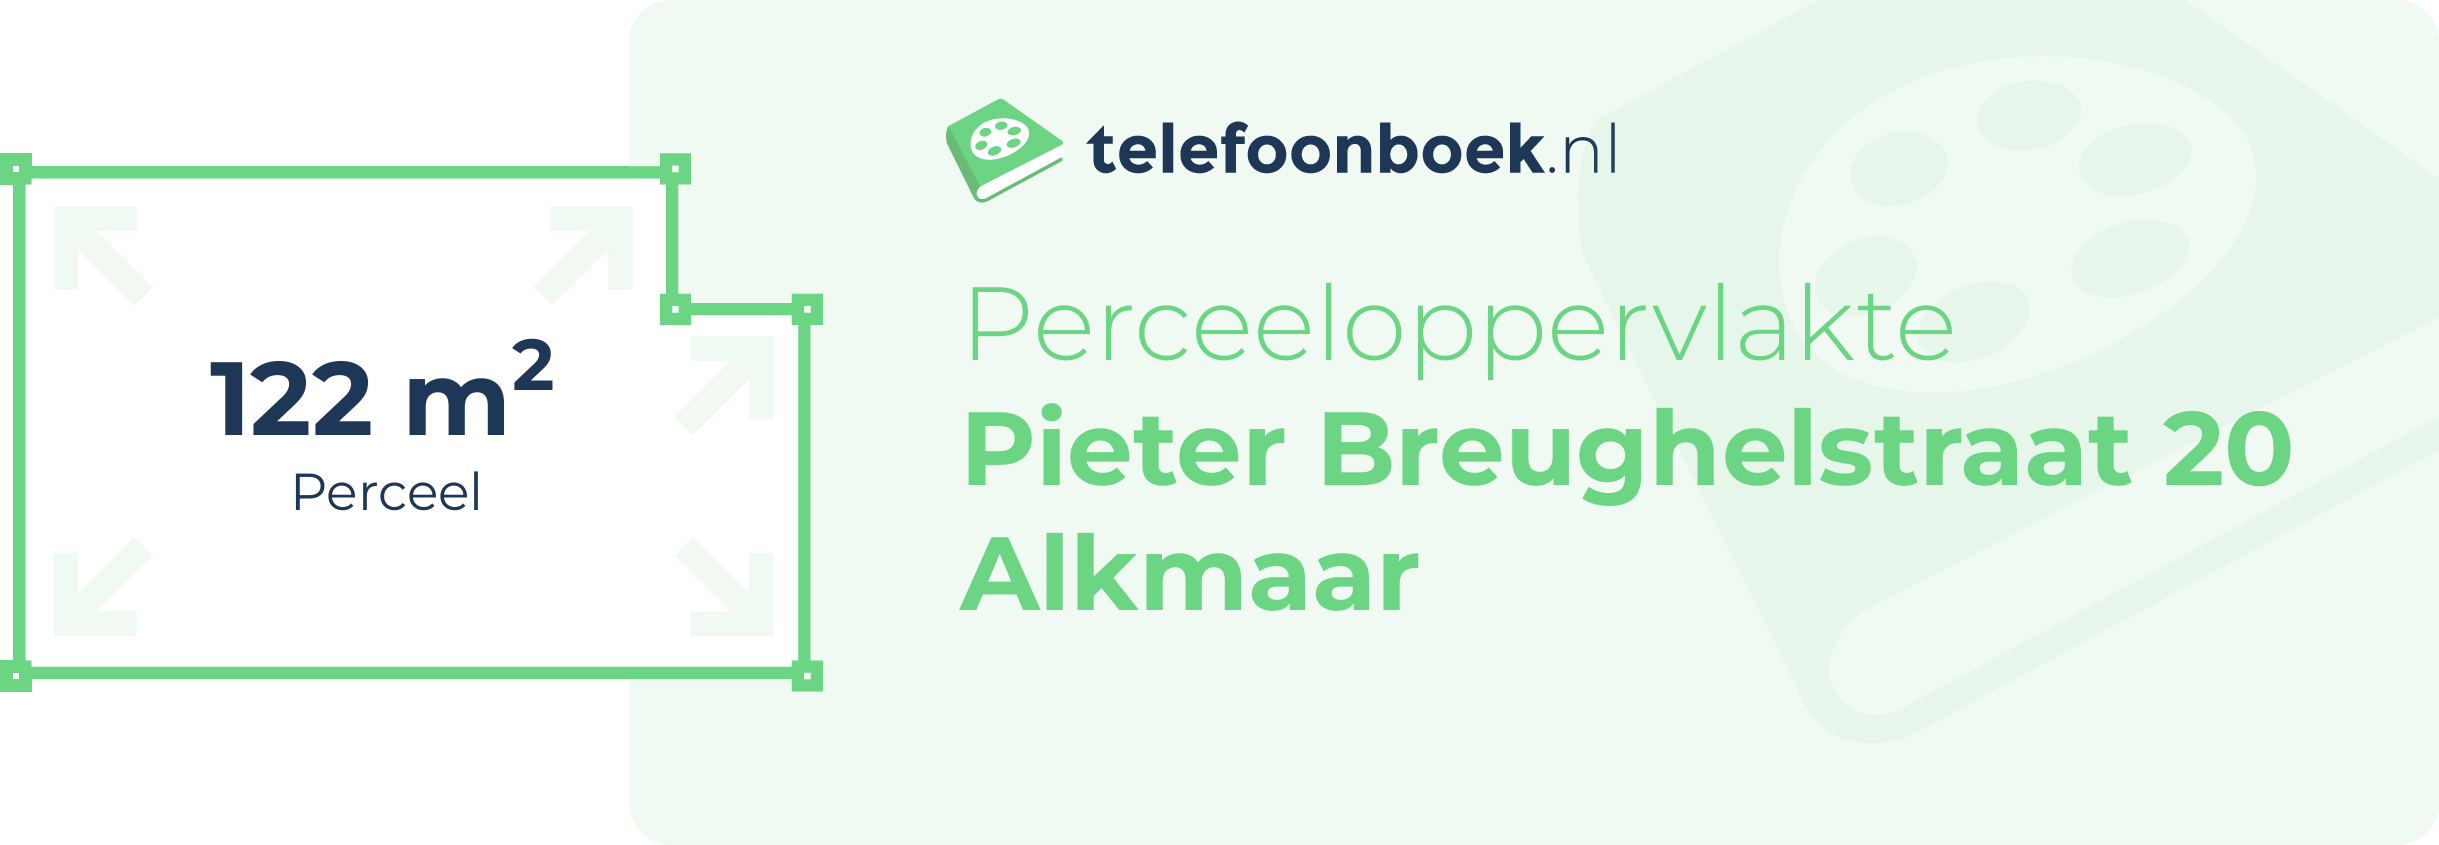 Perceeloppervlakte Pieter Breughelstraat 20 Alkmaar